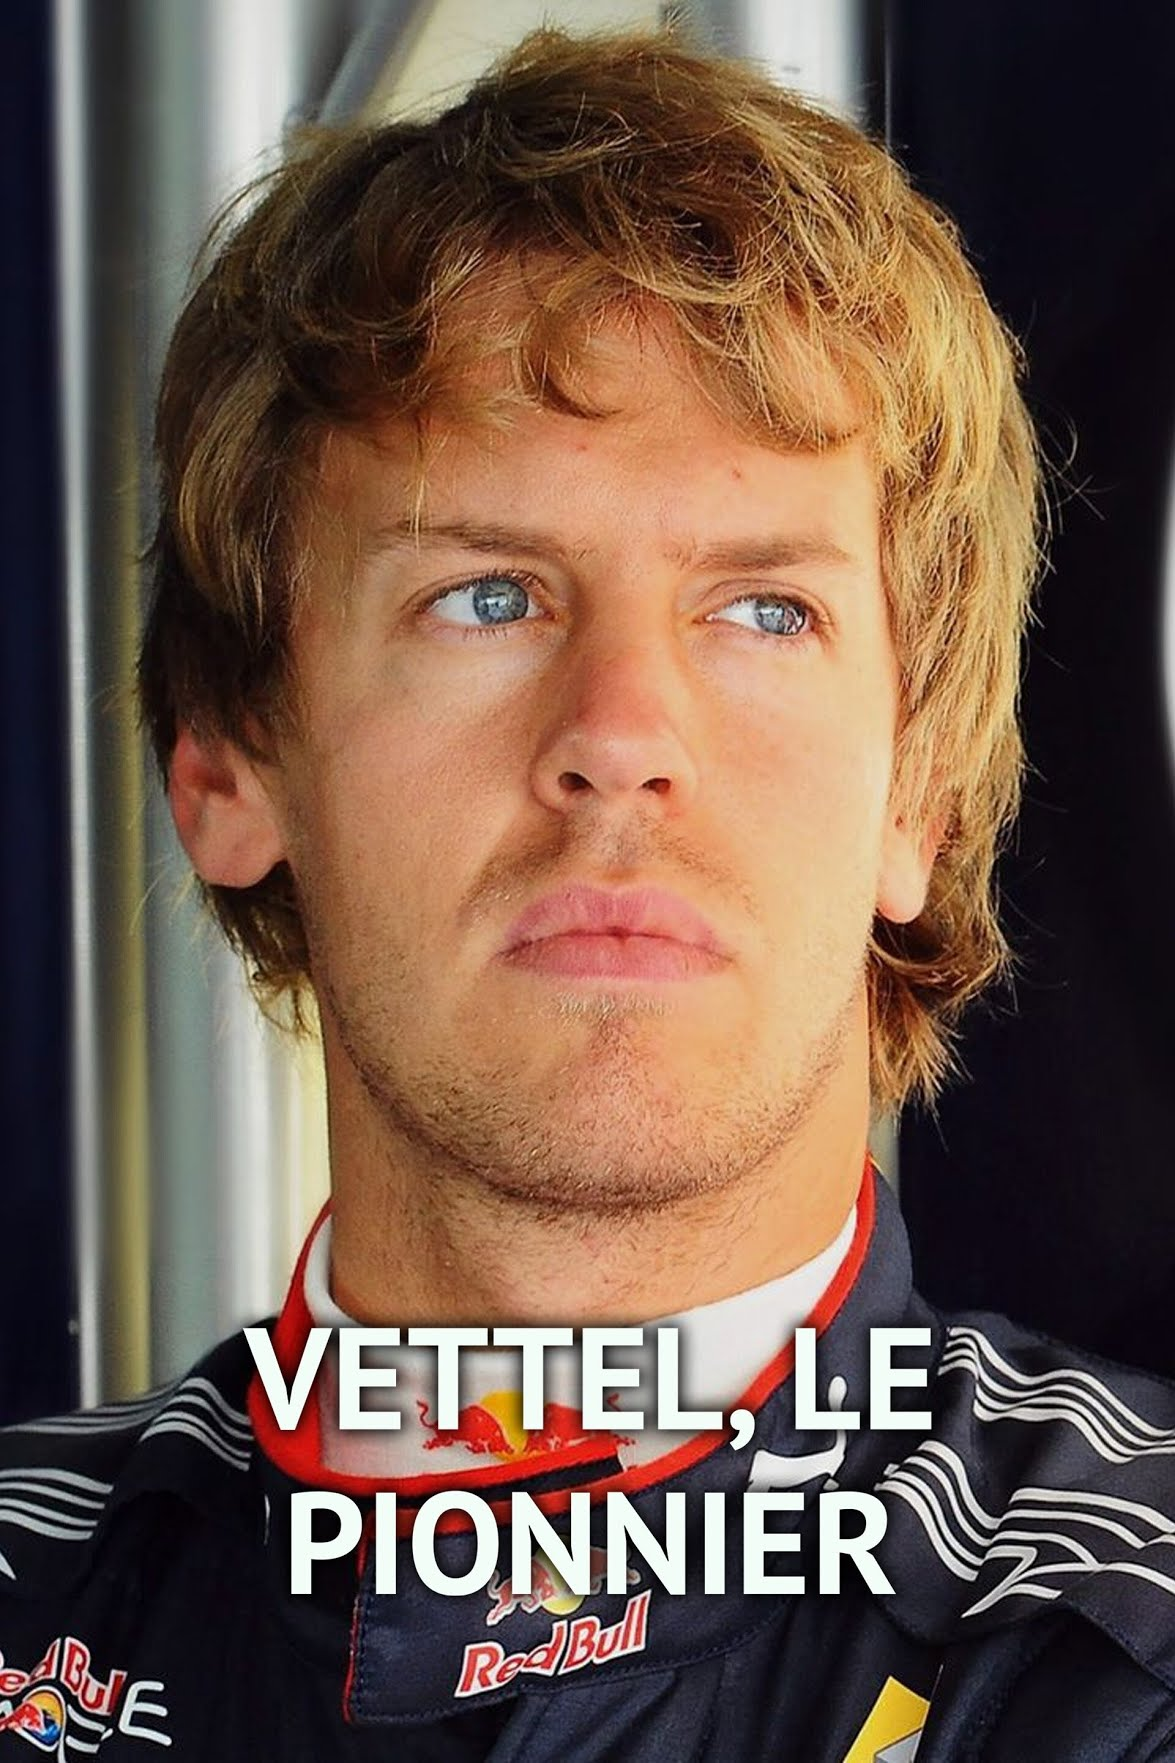 Vettel, le Pionnier